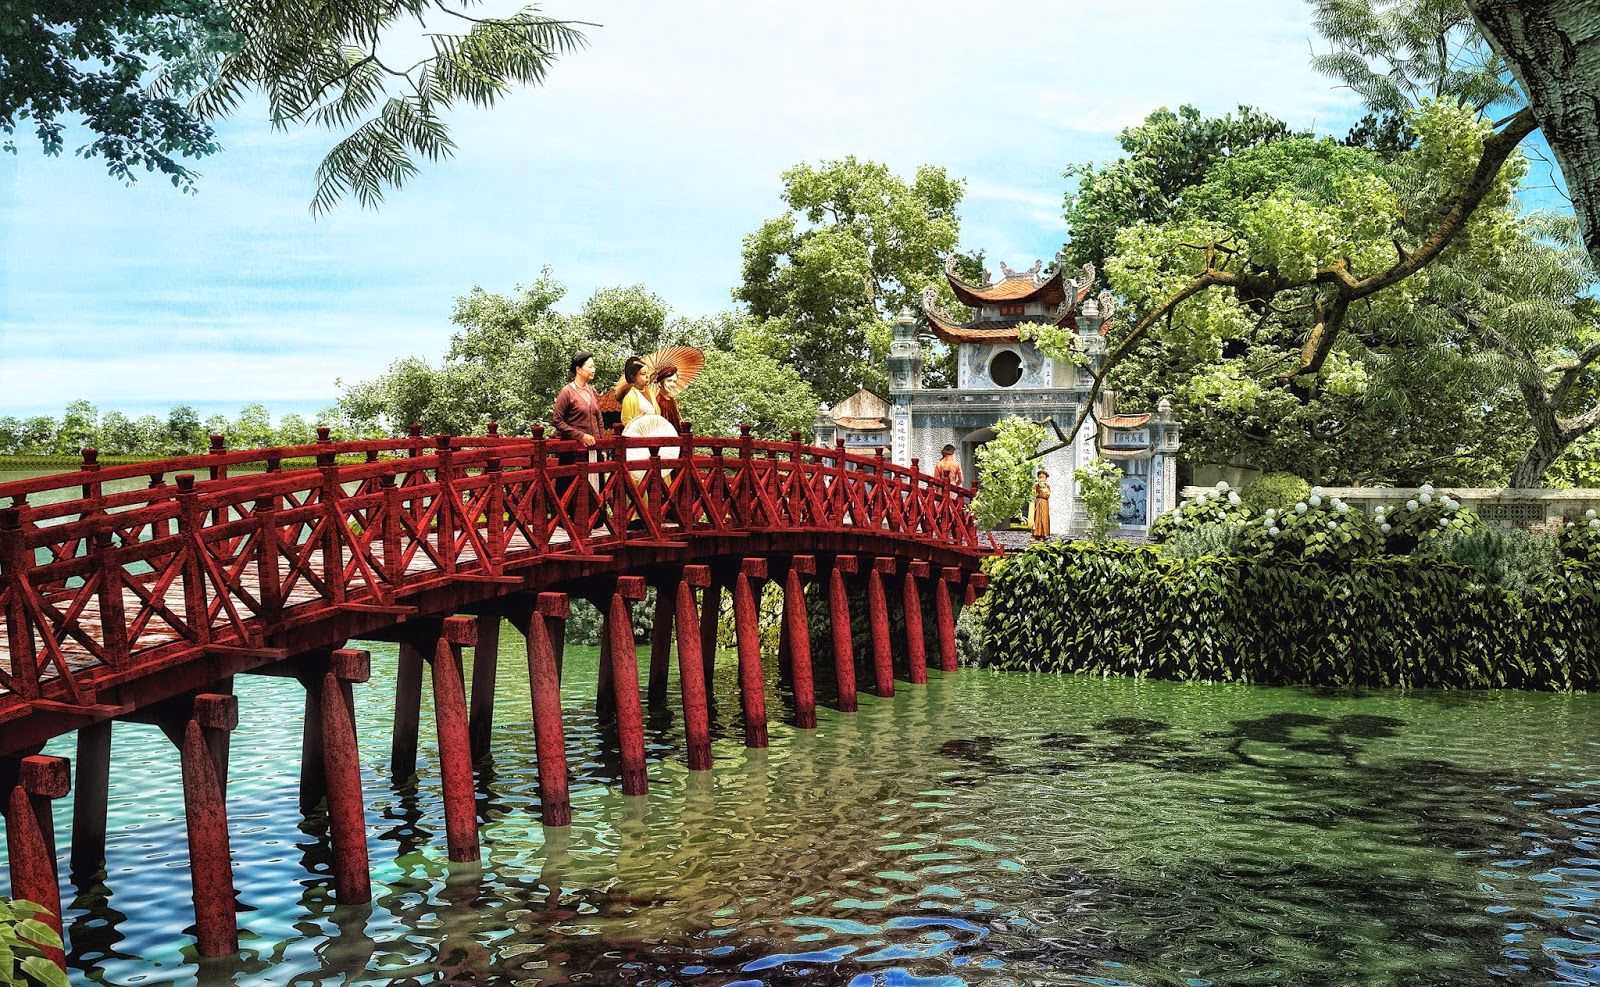 The Huc Bridge in Hanoi city, Vietnam